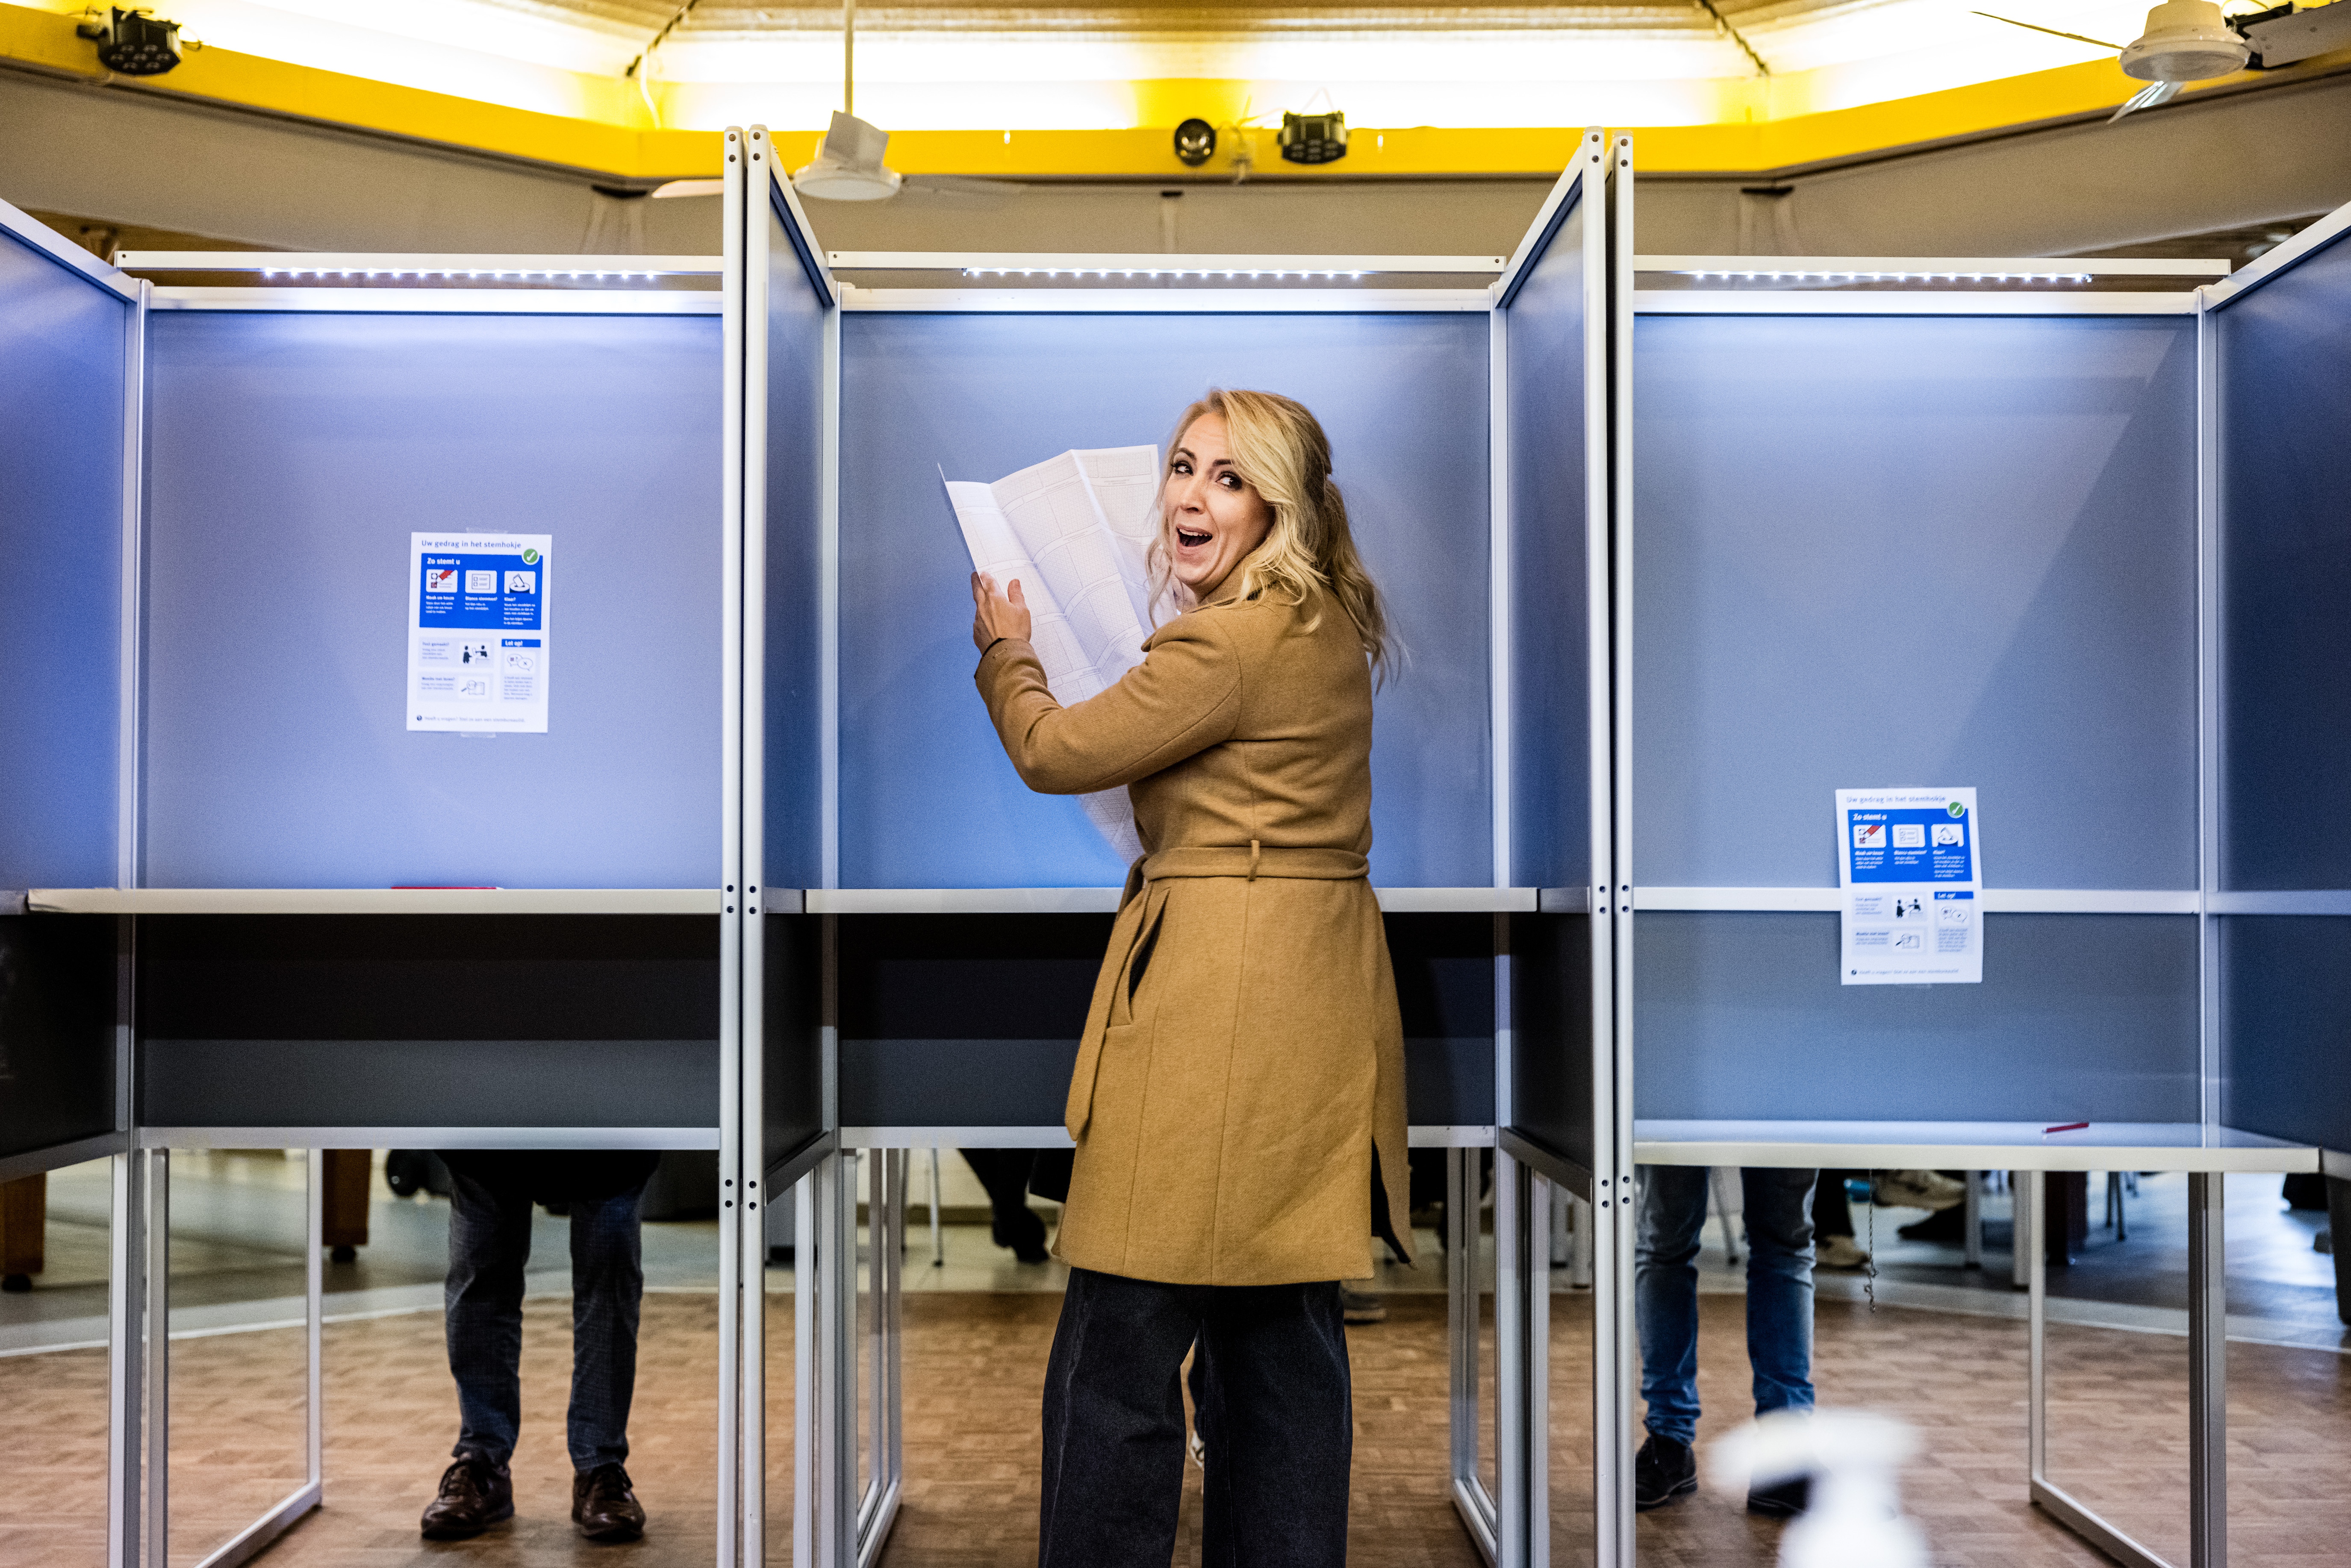 stemmen verkiezingen Tweede Kamer Lilian Marijnissen